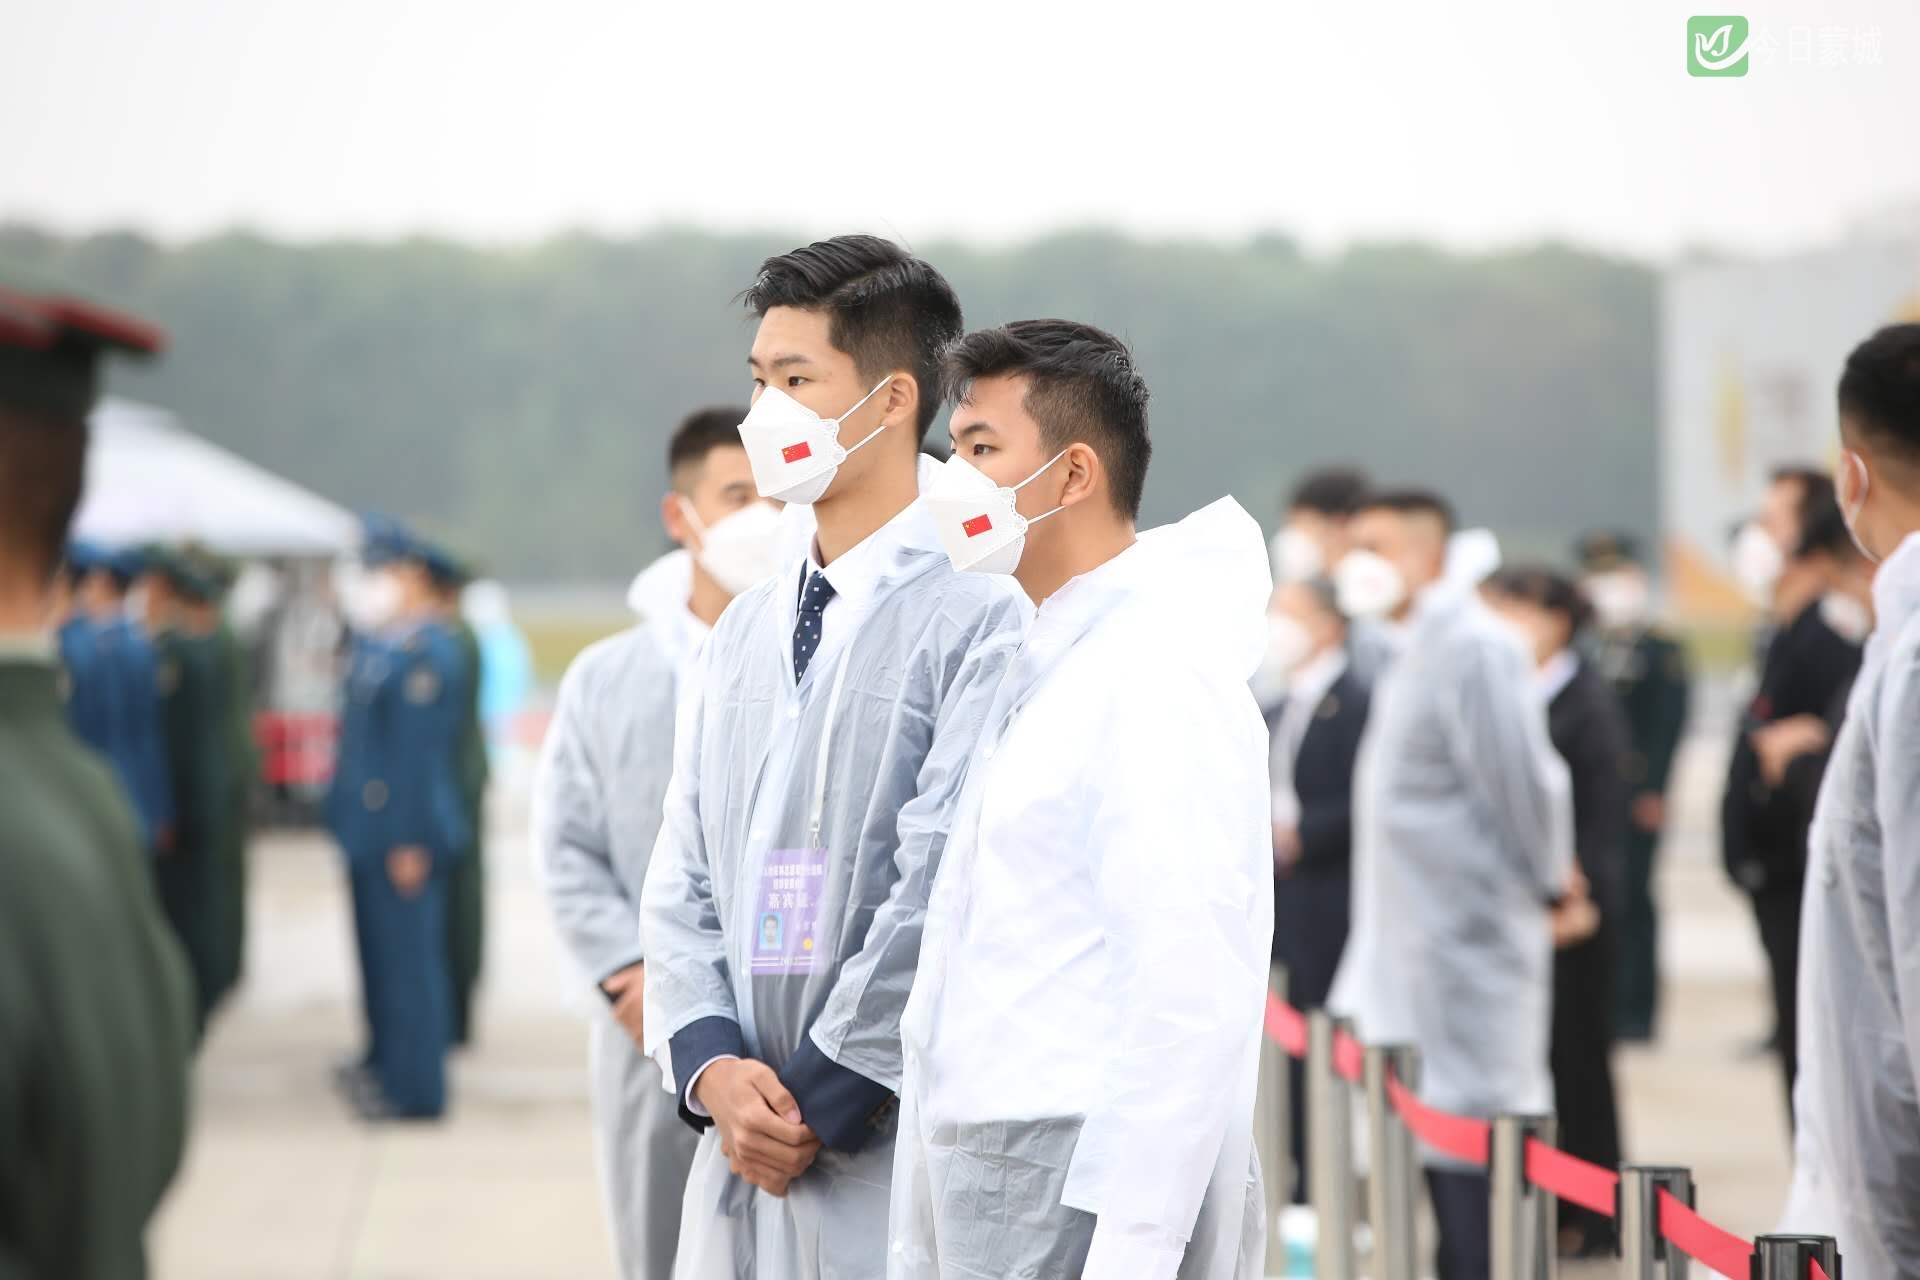 曲木之懿（右）与姜霏梵（左）在沈阳桃仙国际机场，参与志愿军烈士遗骸迎回仪式。